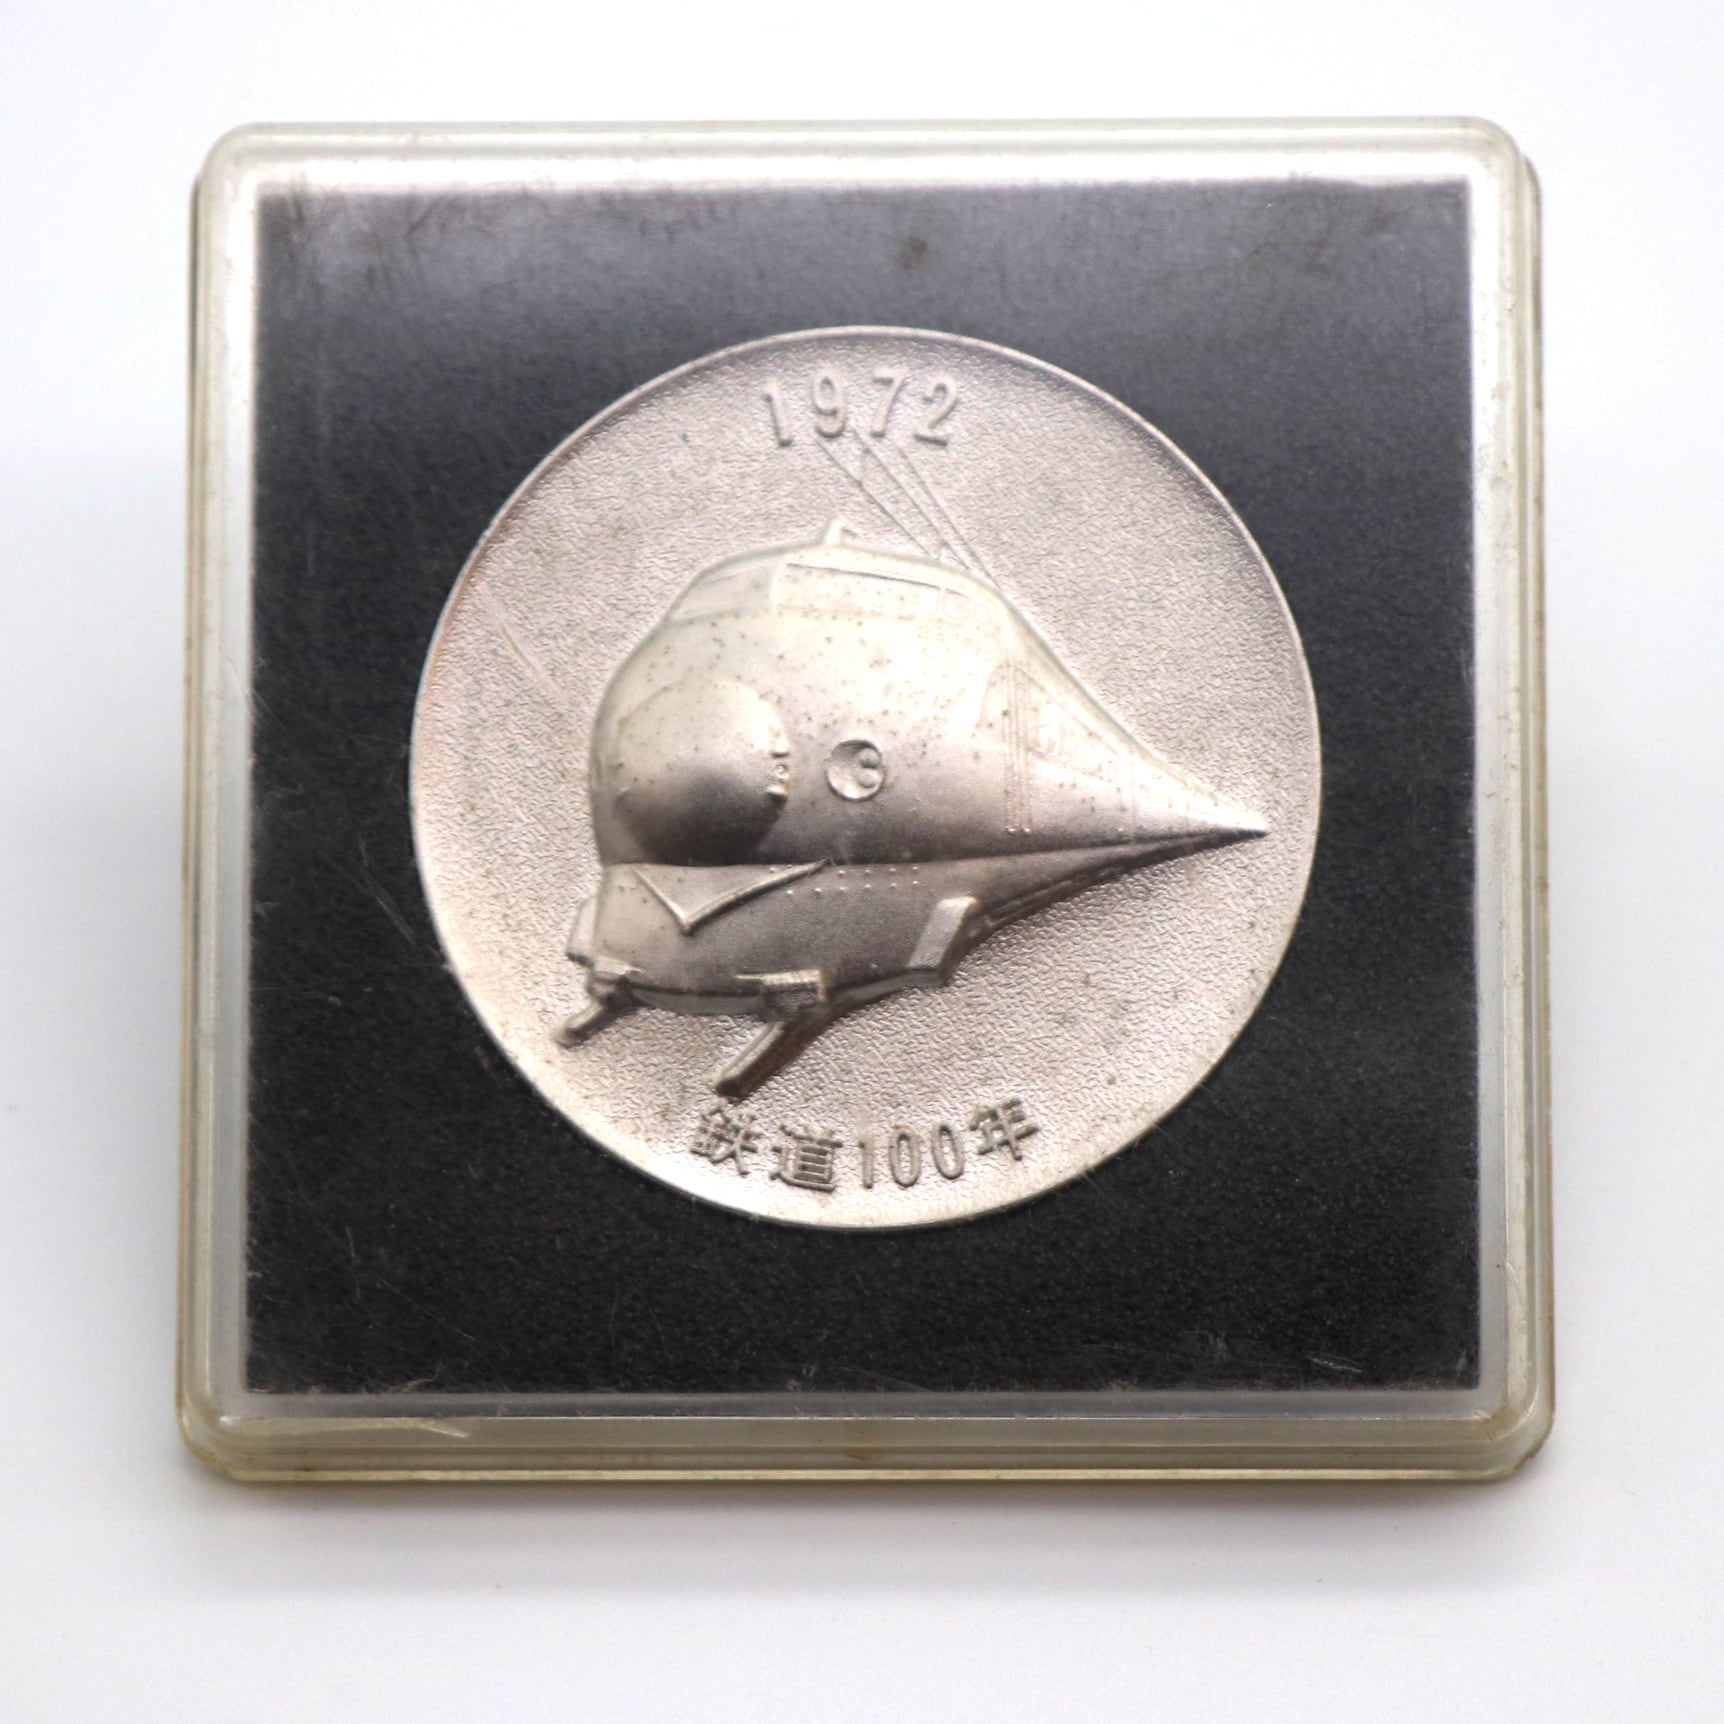 鉄道１００年記念メダル・日本国有鉄道・1972年・記念硬貨・限定品